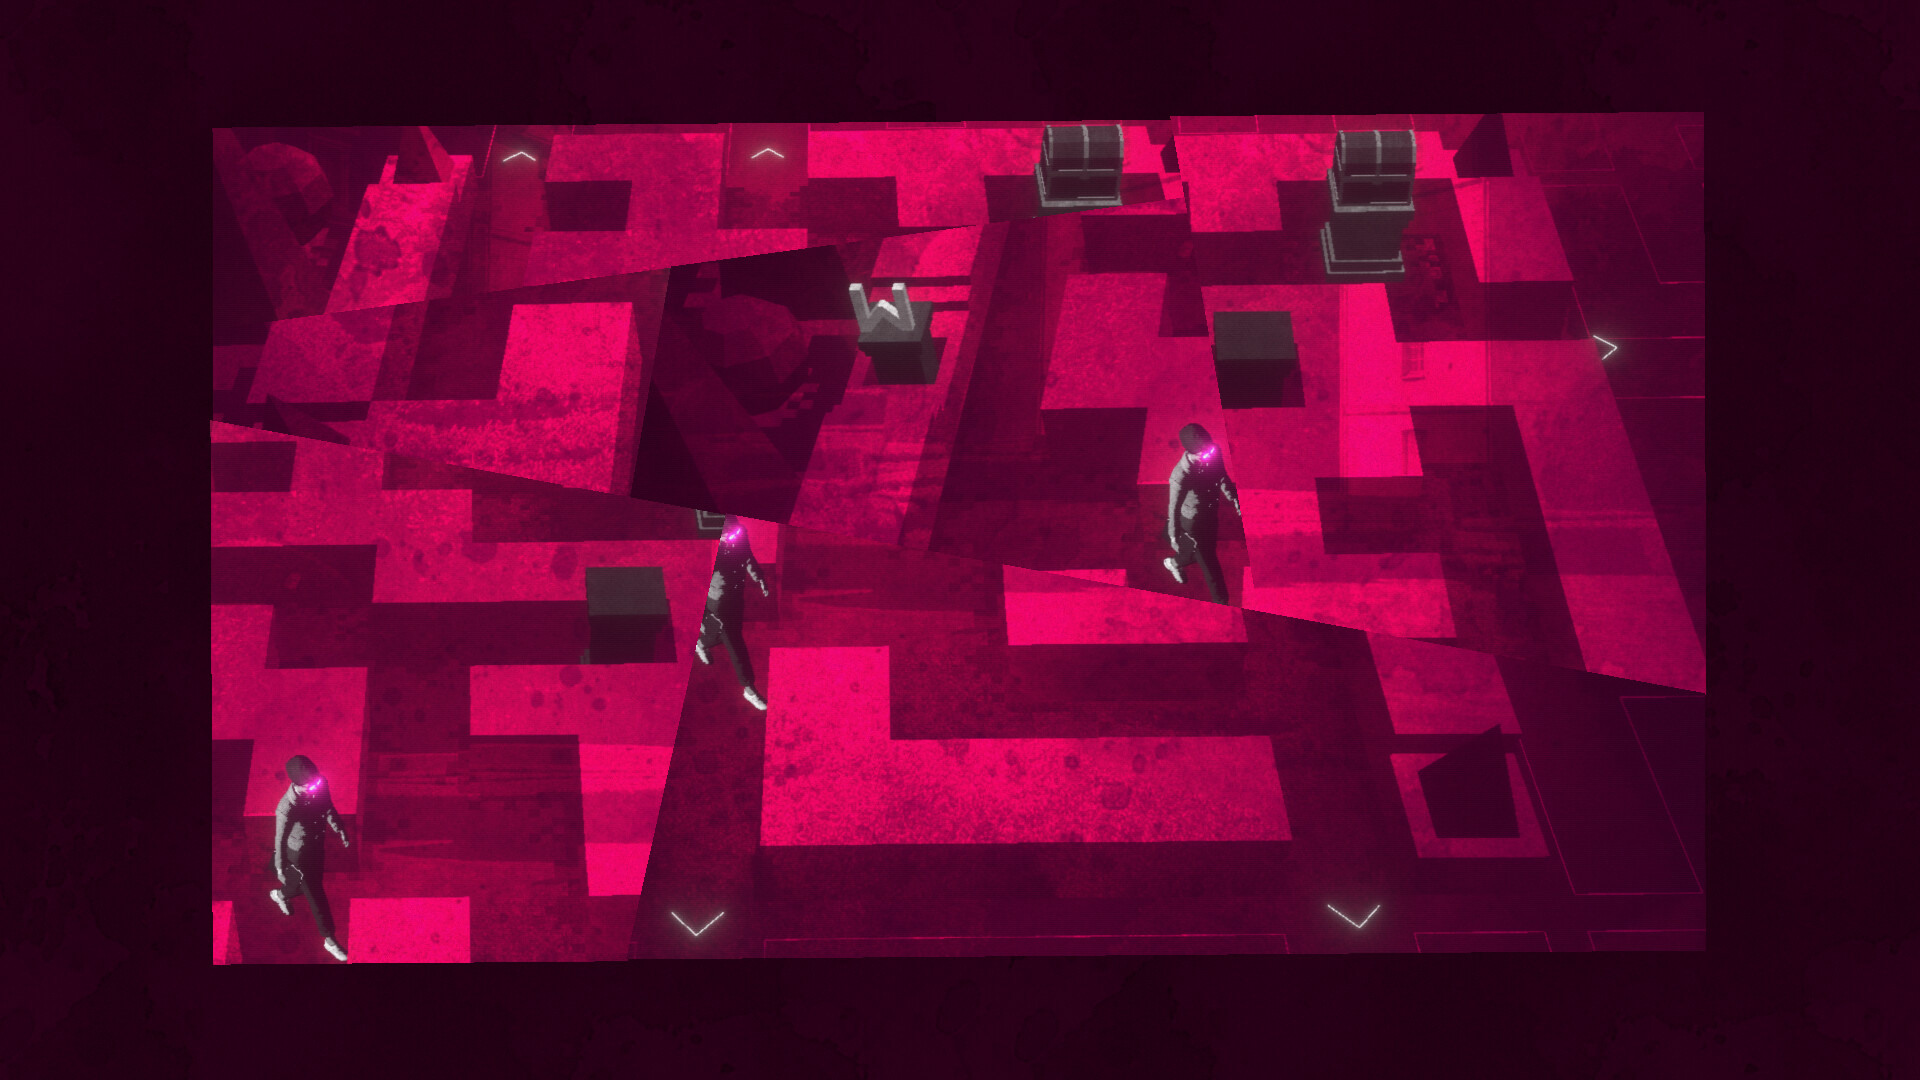 《再会 狂野之心》团队曝光新作《罗蕾莱和雷射眼》宣传影片「迷宫」 展现惊悚谜样氛围